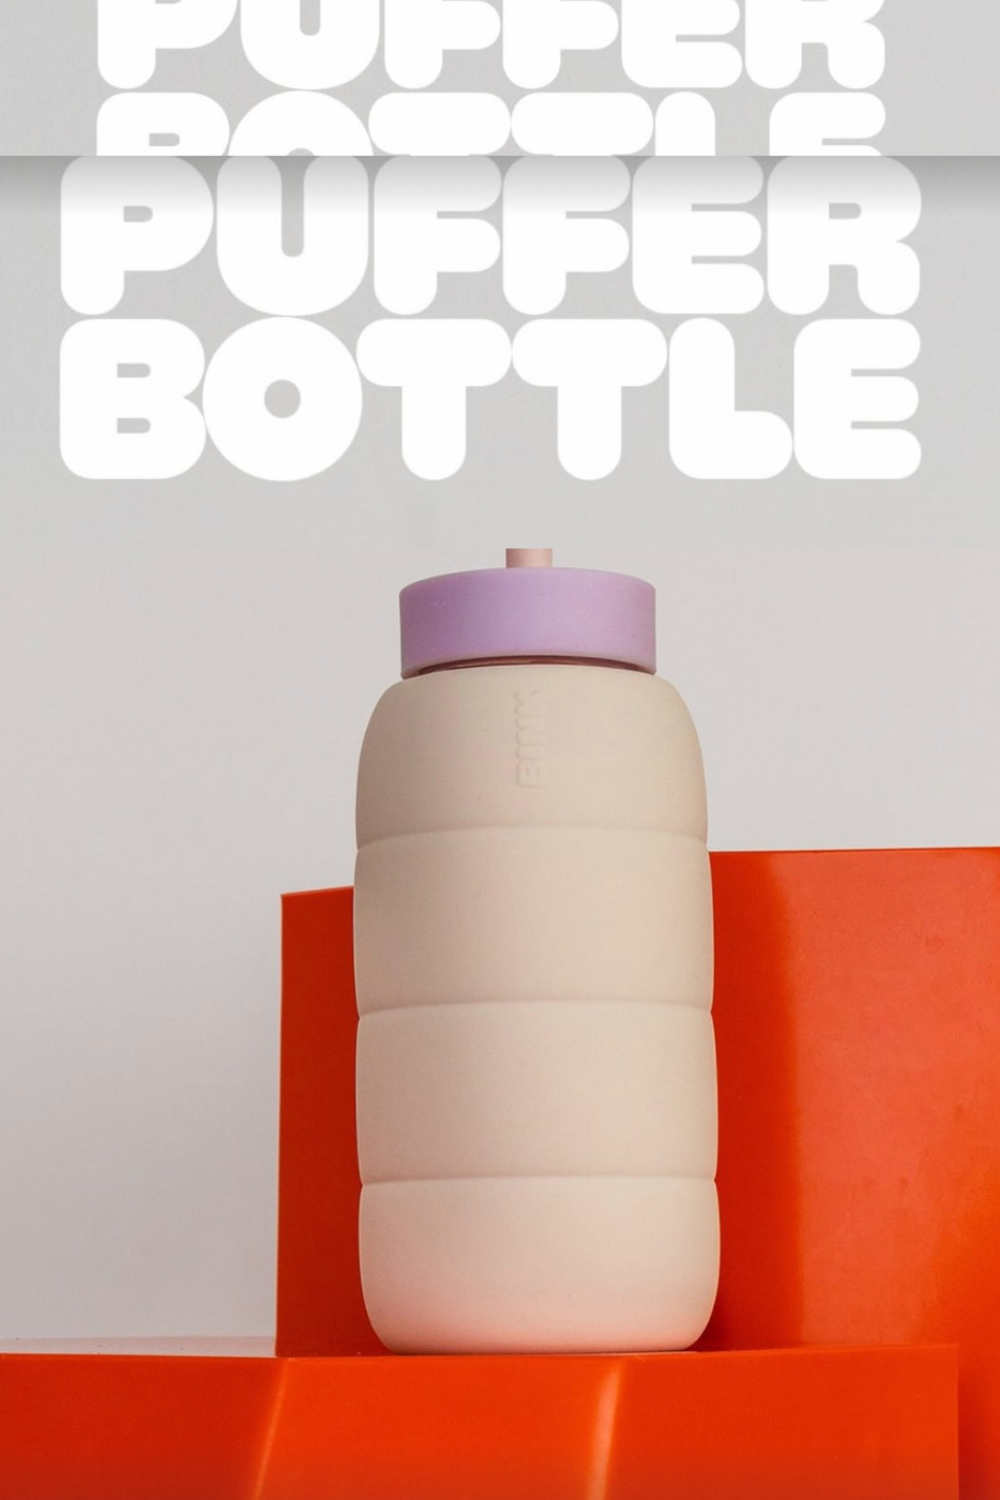 Bink | Puffer Bottle - Cobalt